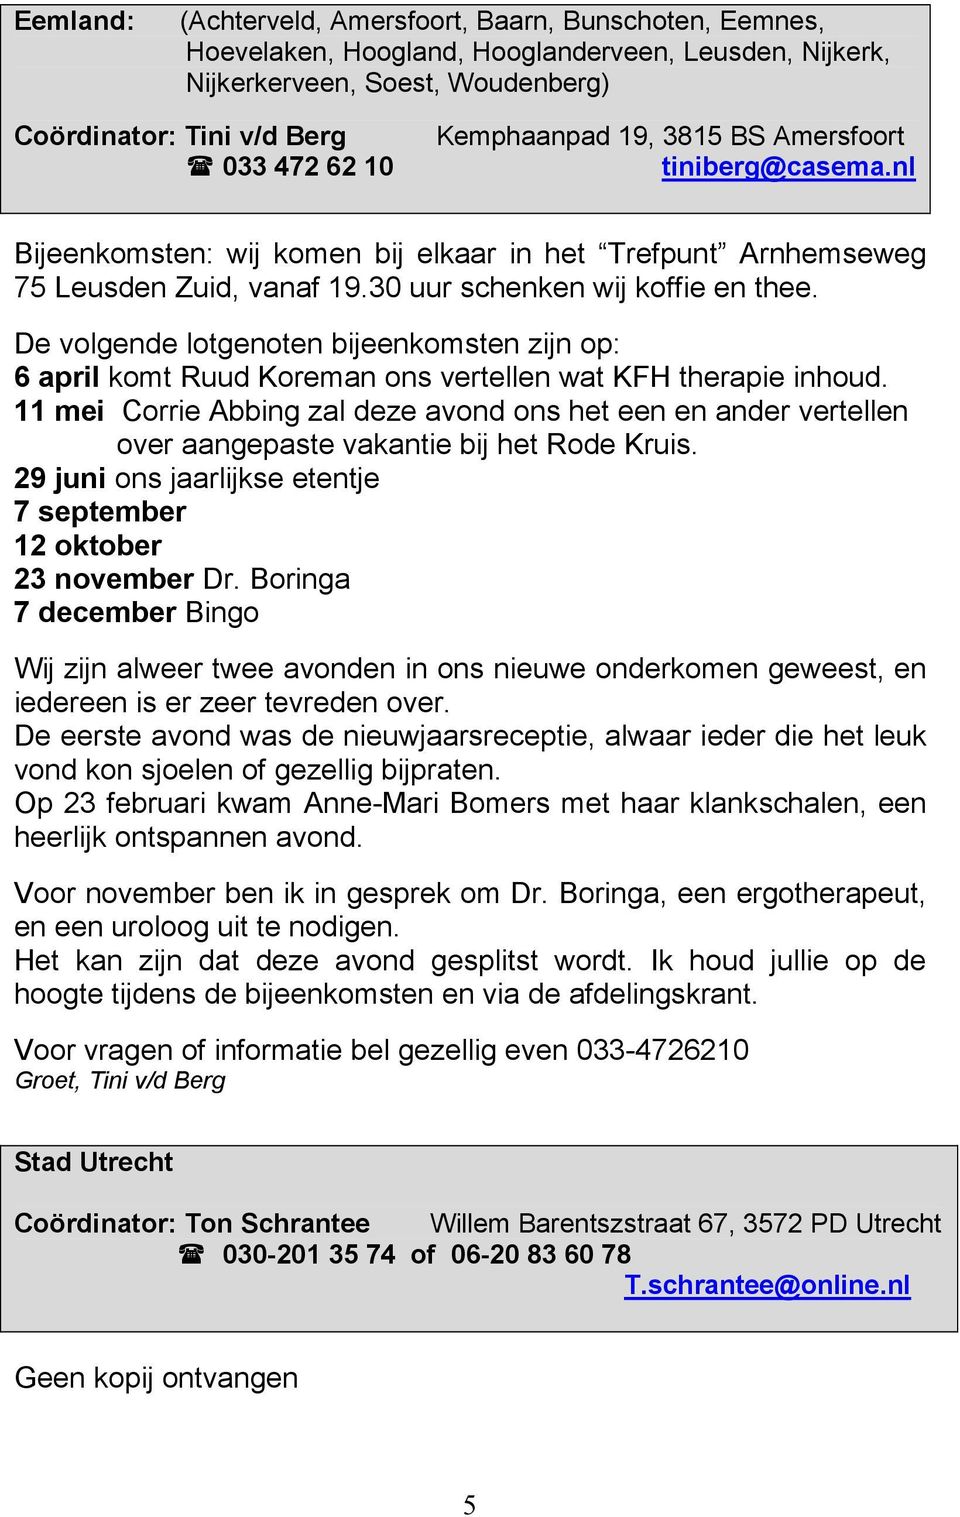 De volgende lotgenoten bijeenkomsten zijn op: 6 april komt Ruud Koreman ons vertellen wat KFH therapie inhoud.